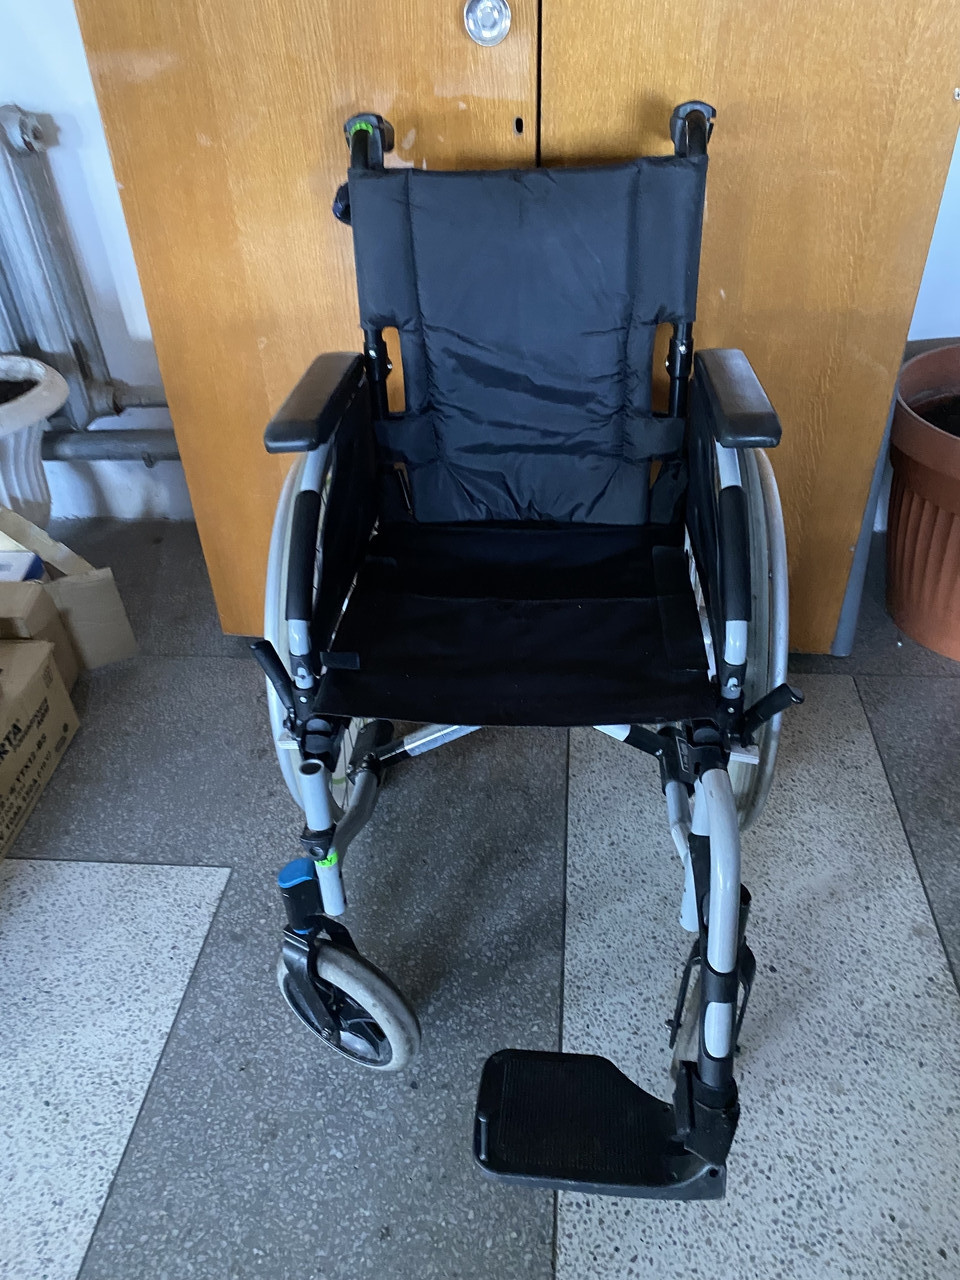 

Надежная и хорошая инвалидная коляска Invacar с одной подножкой ширина сидения 39 см. б у в хорошем состоянии